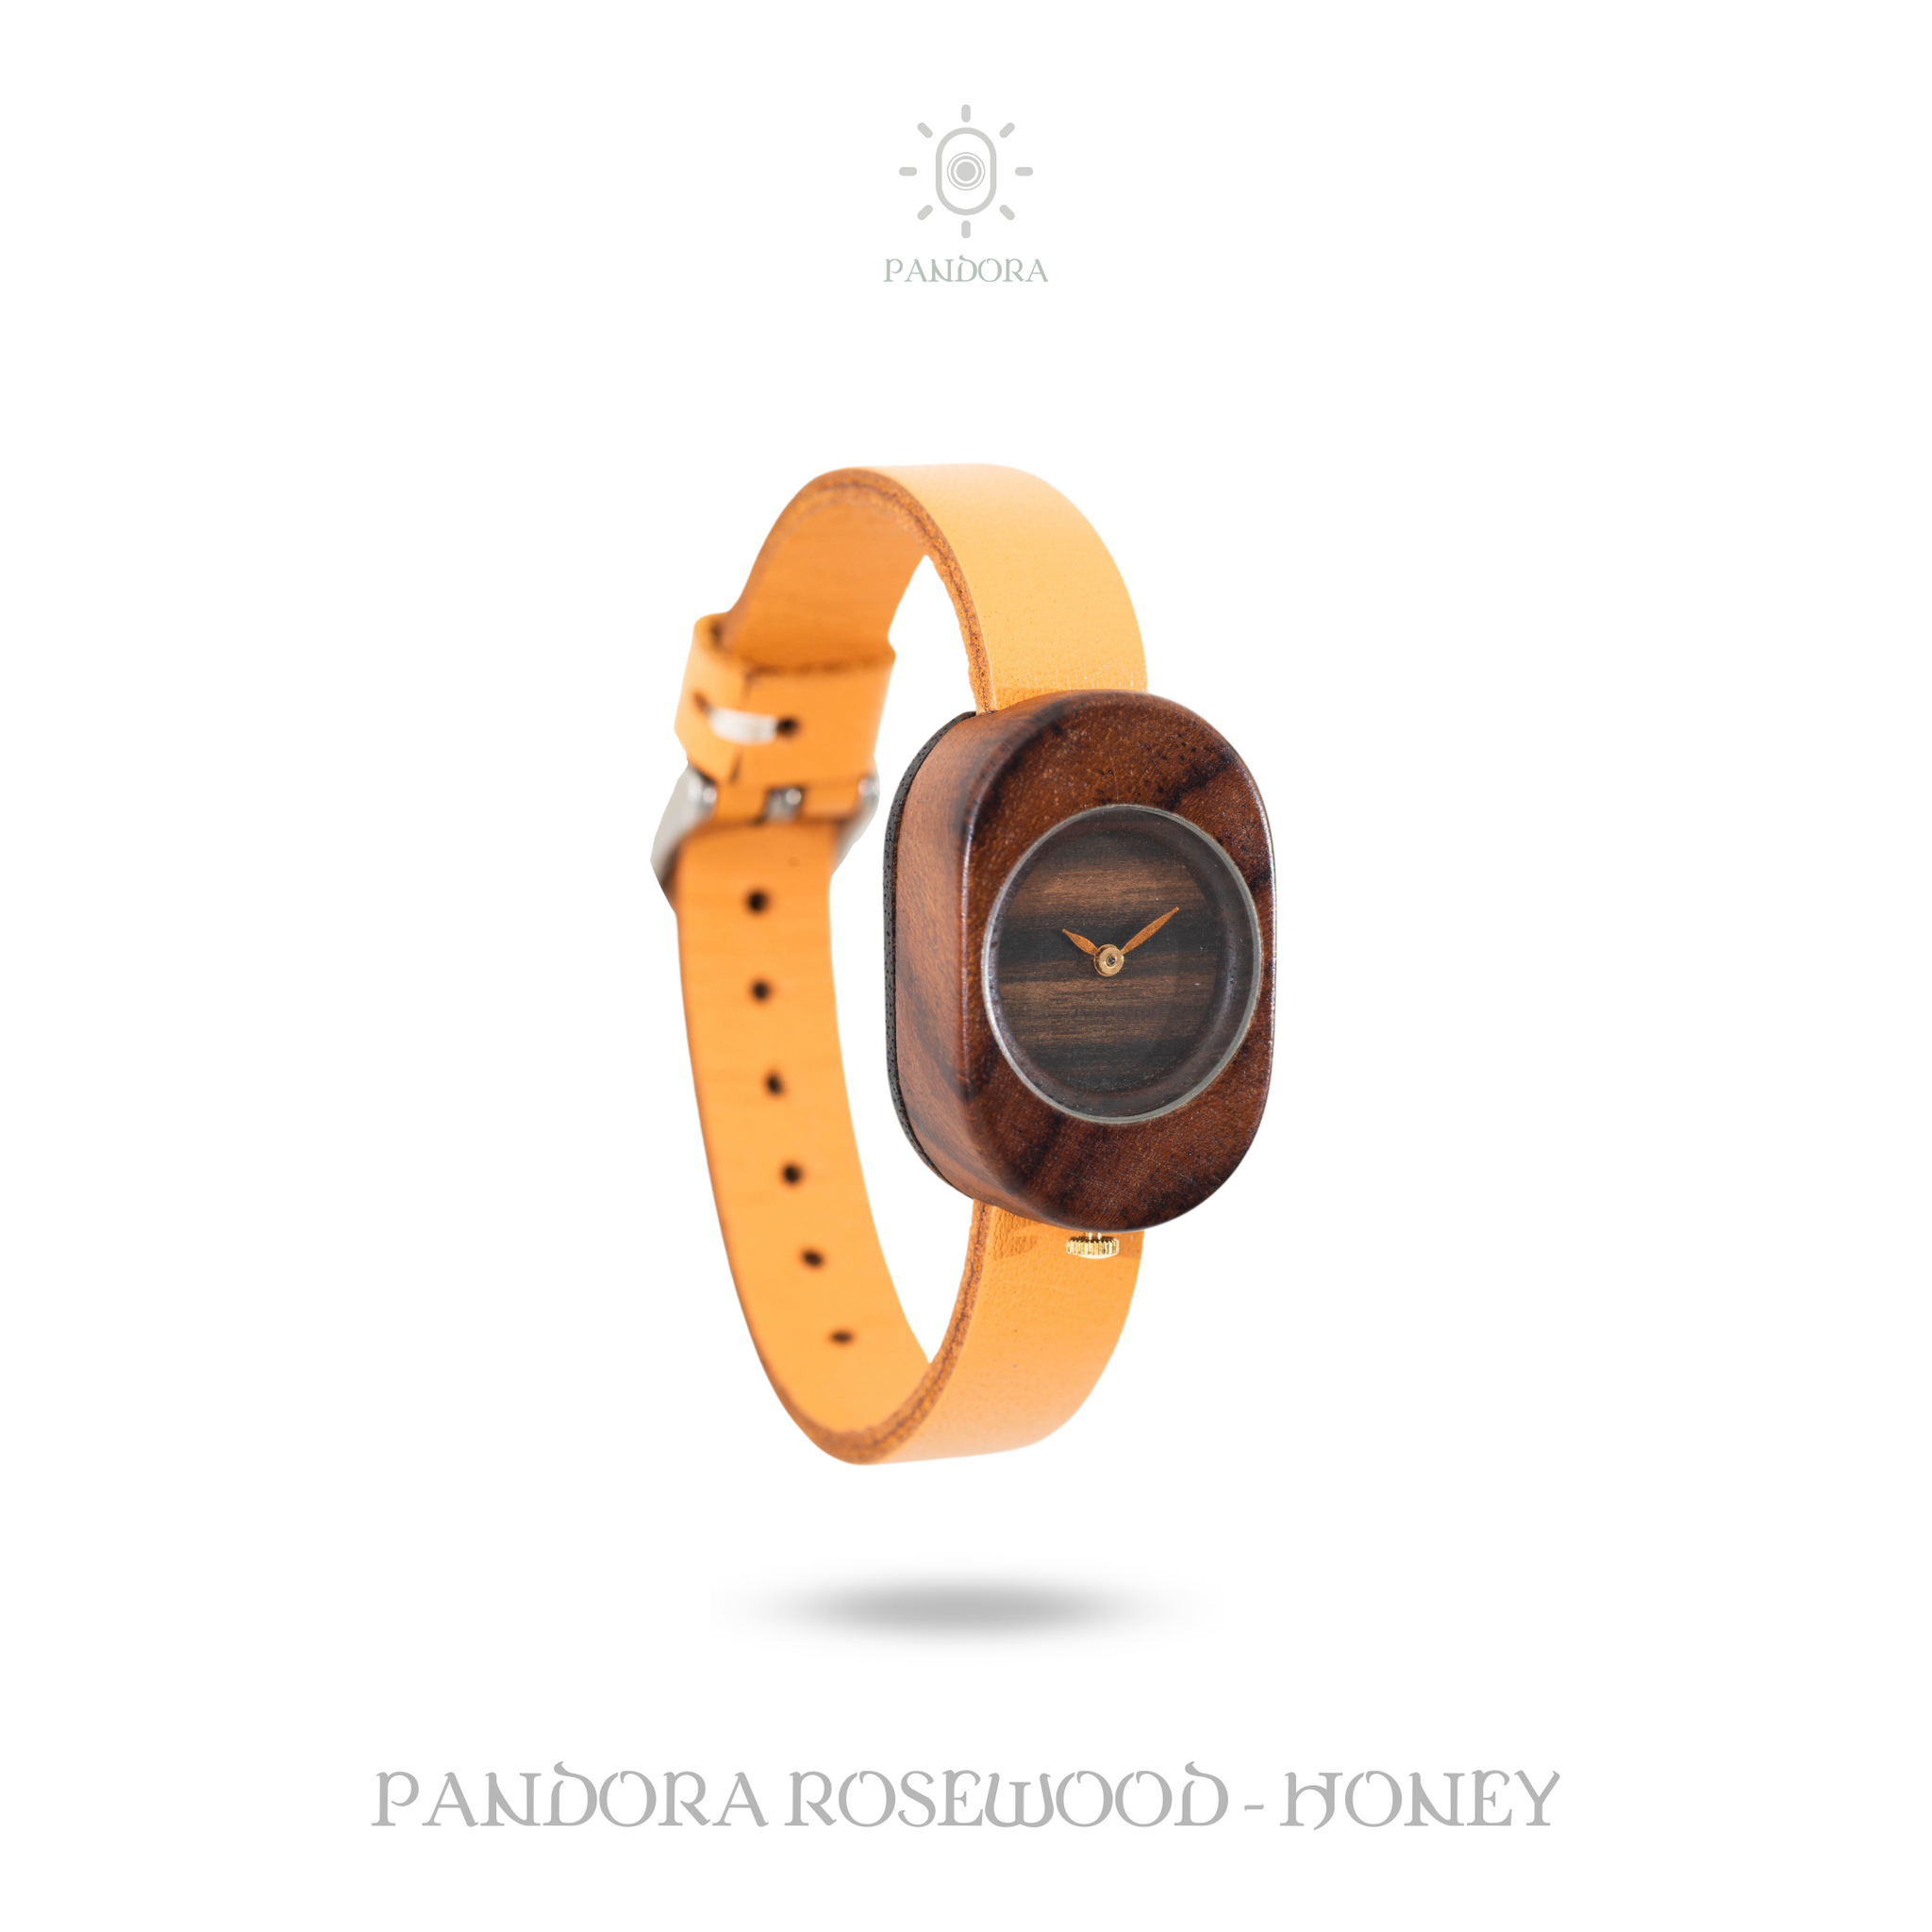 Eboni Pandora Rosewood - Honey